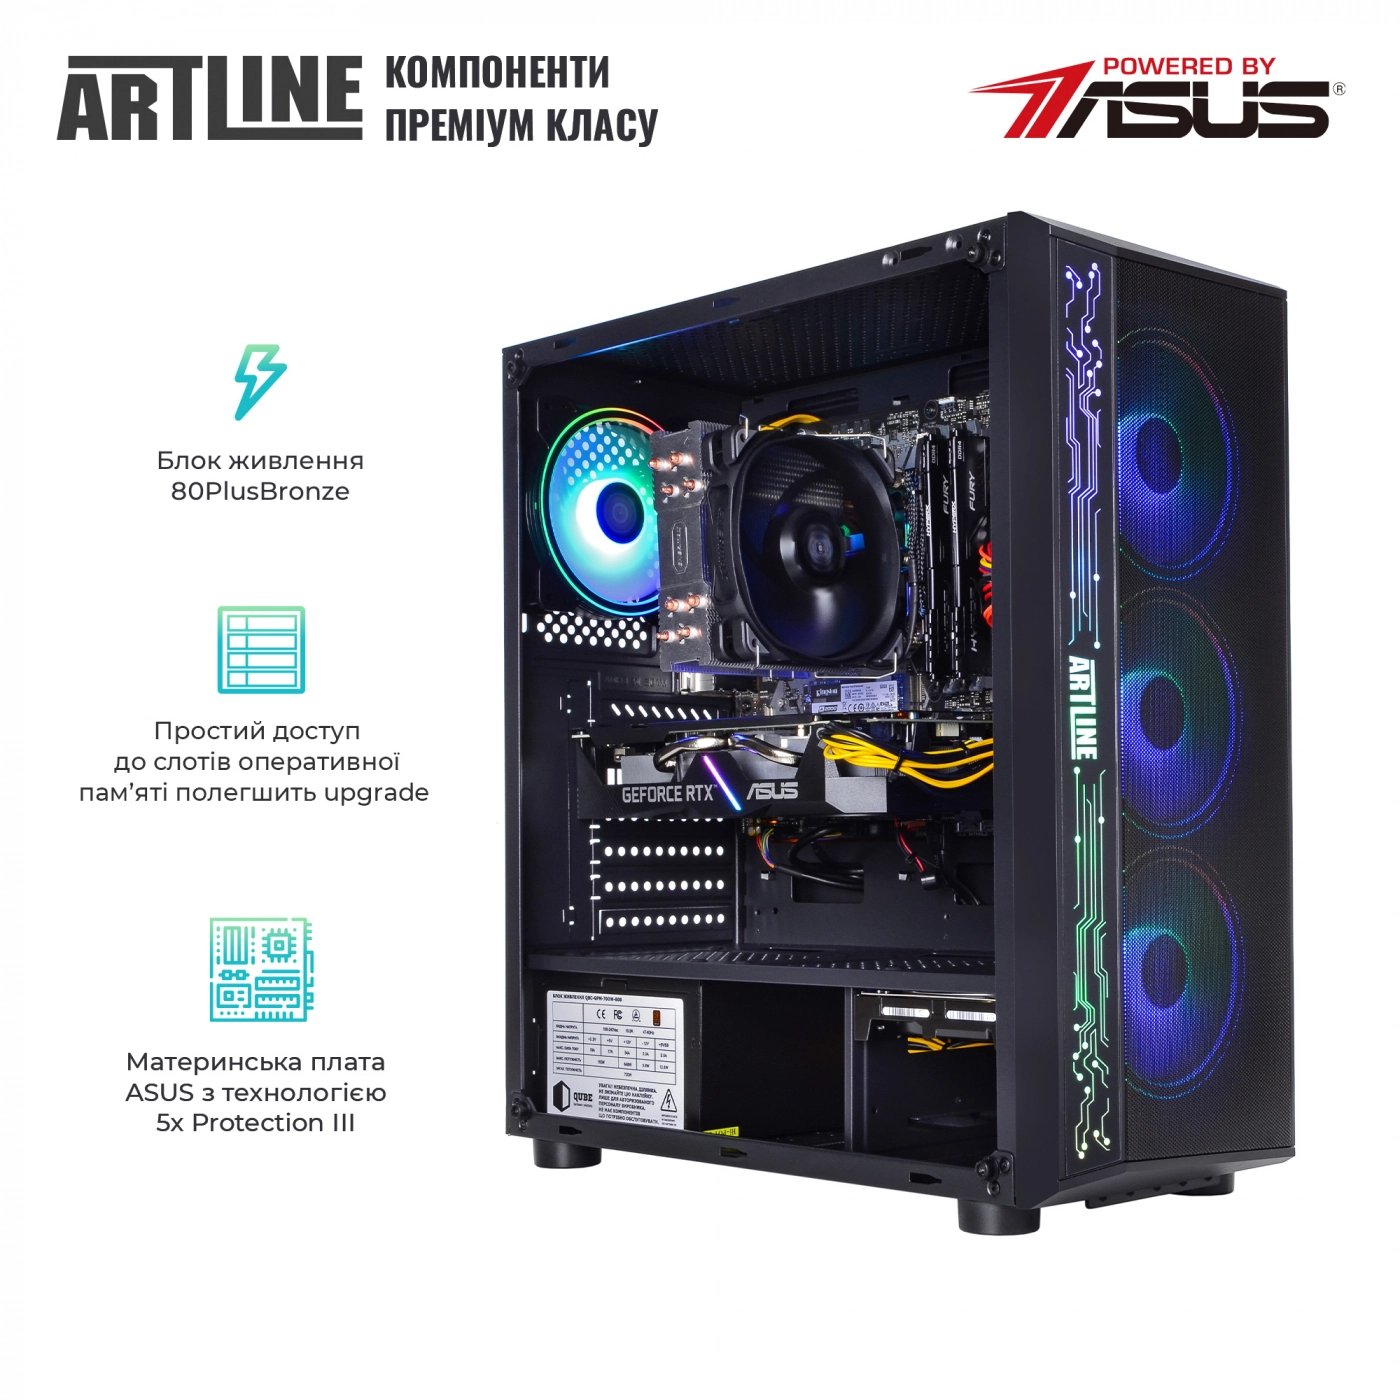 Купить Компьютер ARTLINE Gaming X55v40 - фото 2